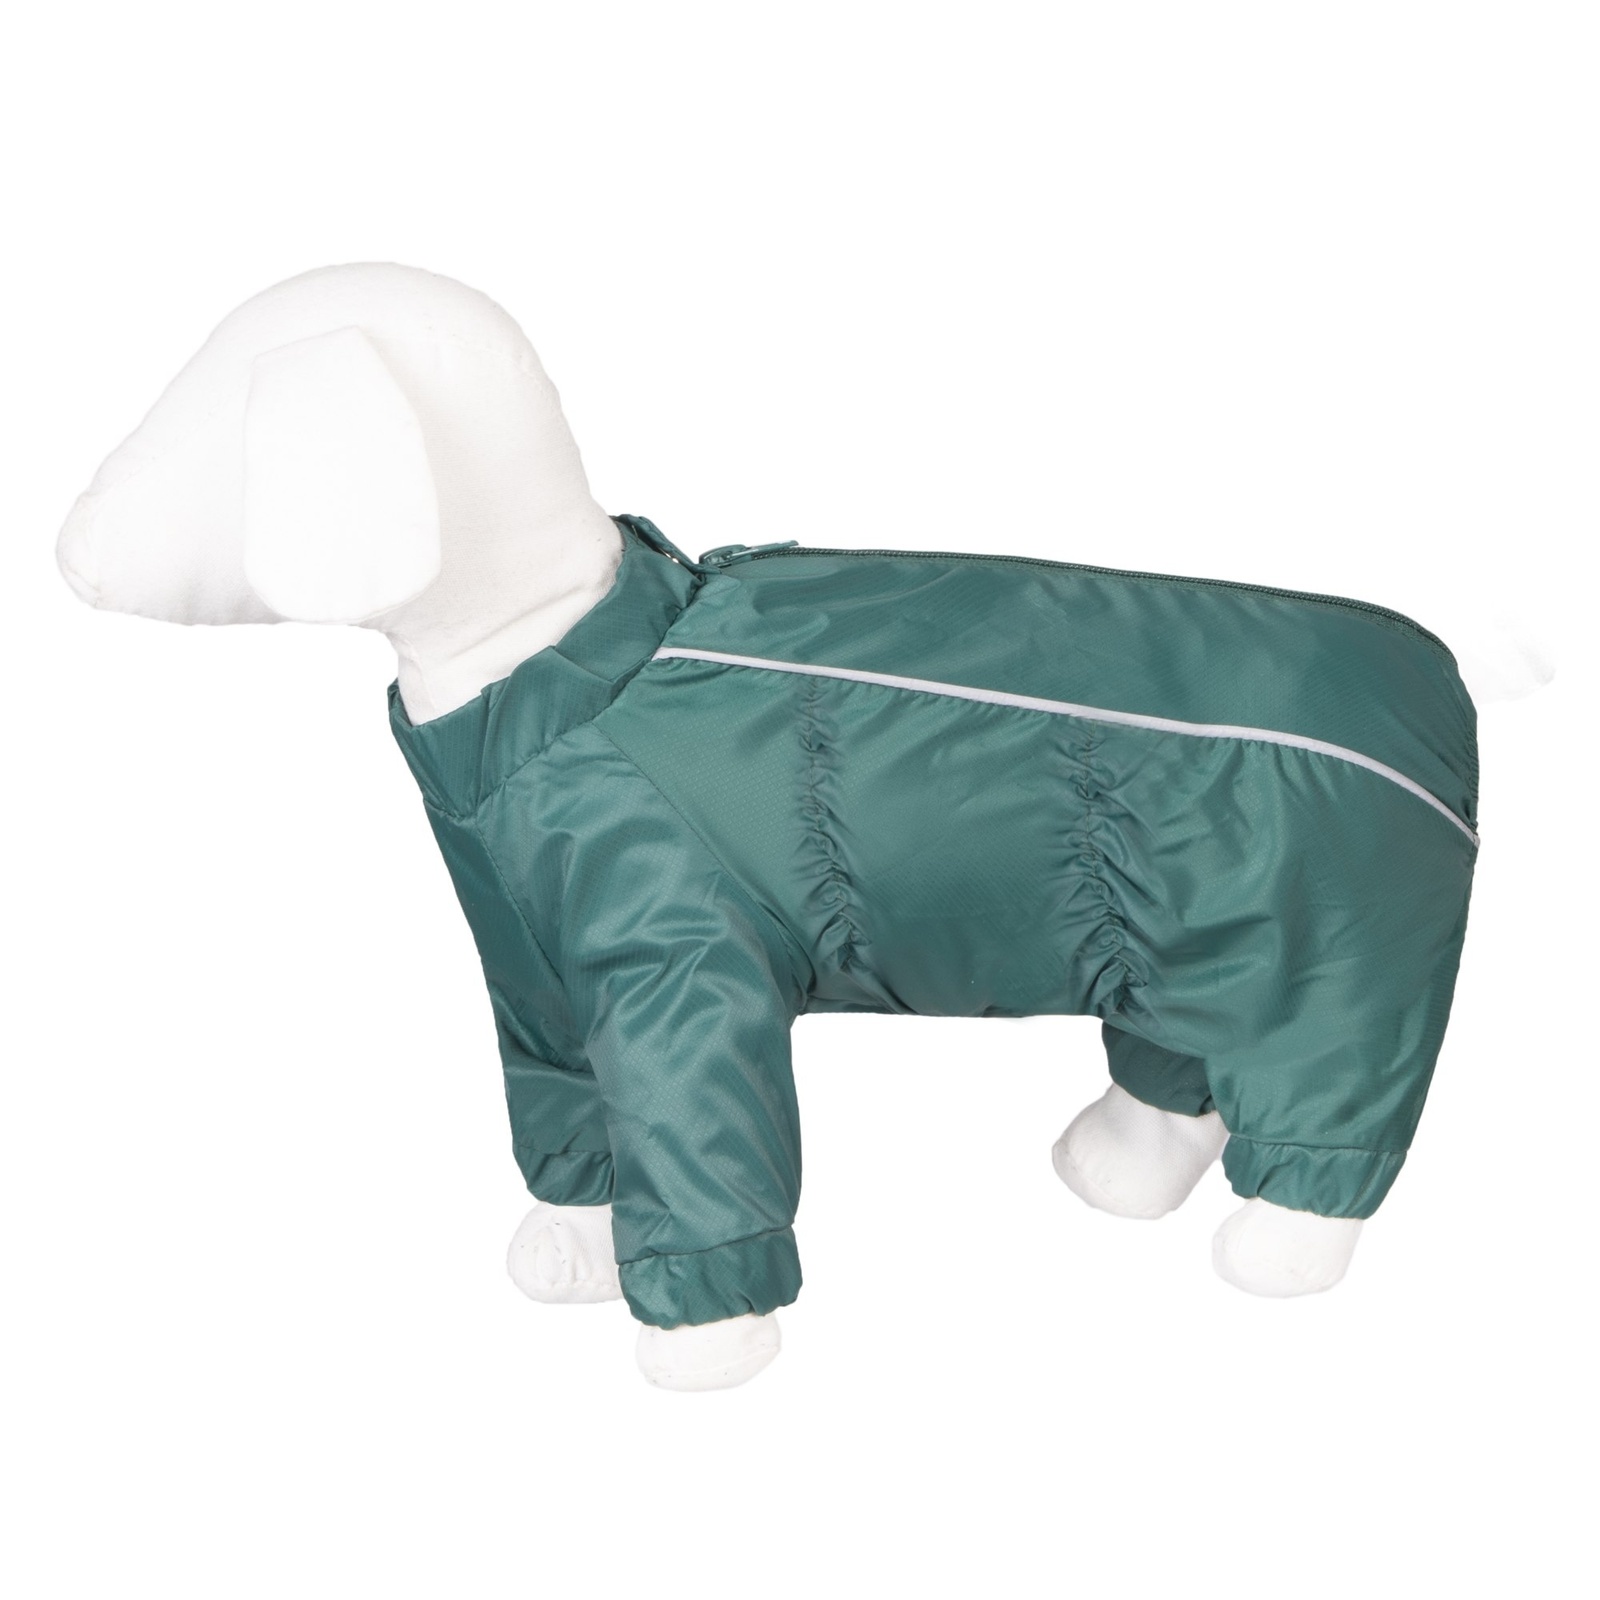 Yami-Yami одежда дождевик для собак малых пород, изумрудный (ХL/4) Yami-Yami одежда дождевик для собак малых пород, изумрудный (ХL/4) - фото 1